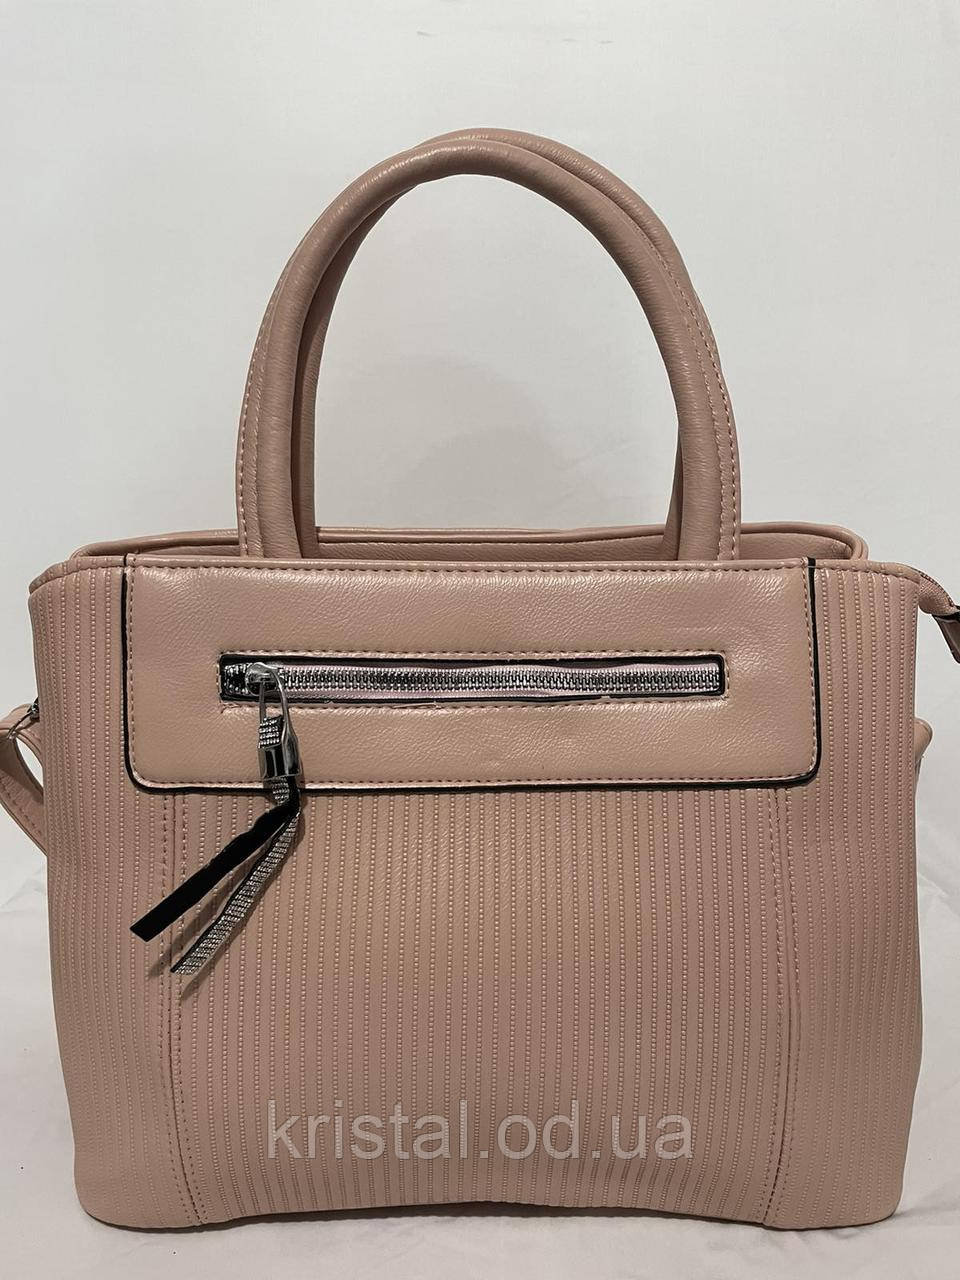 Жіноча сумка гуртом 27*22 см. серії "Скарлет" No14835